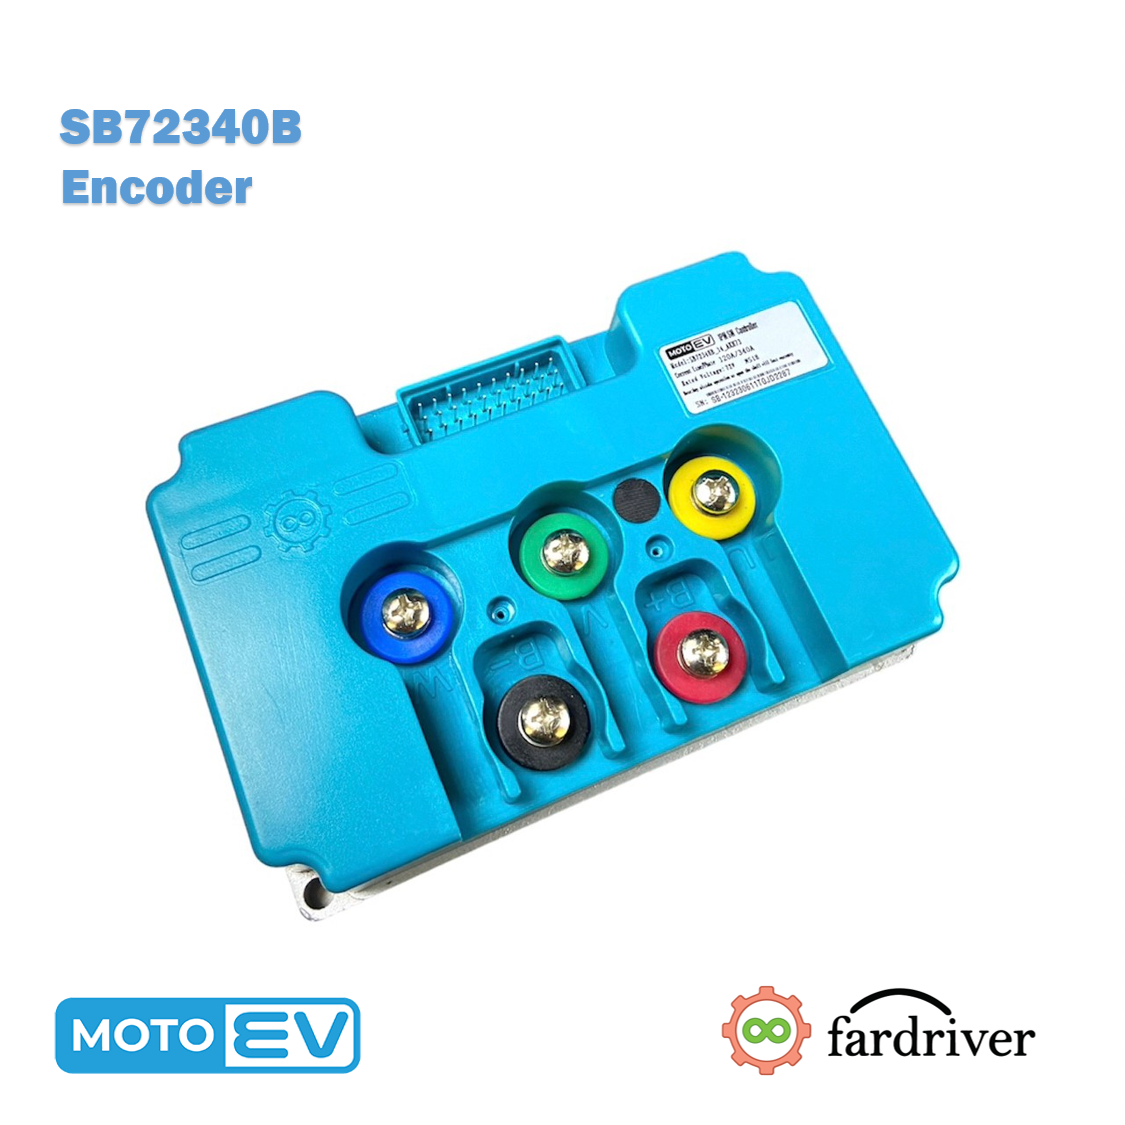 SB72340B Encoder 120A/340A